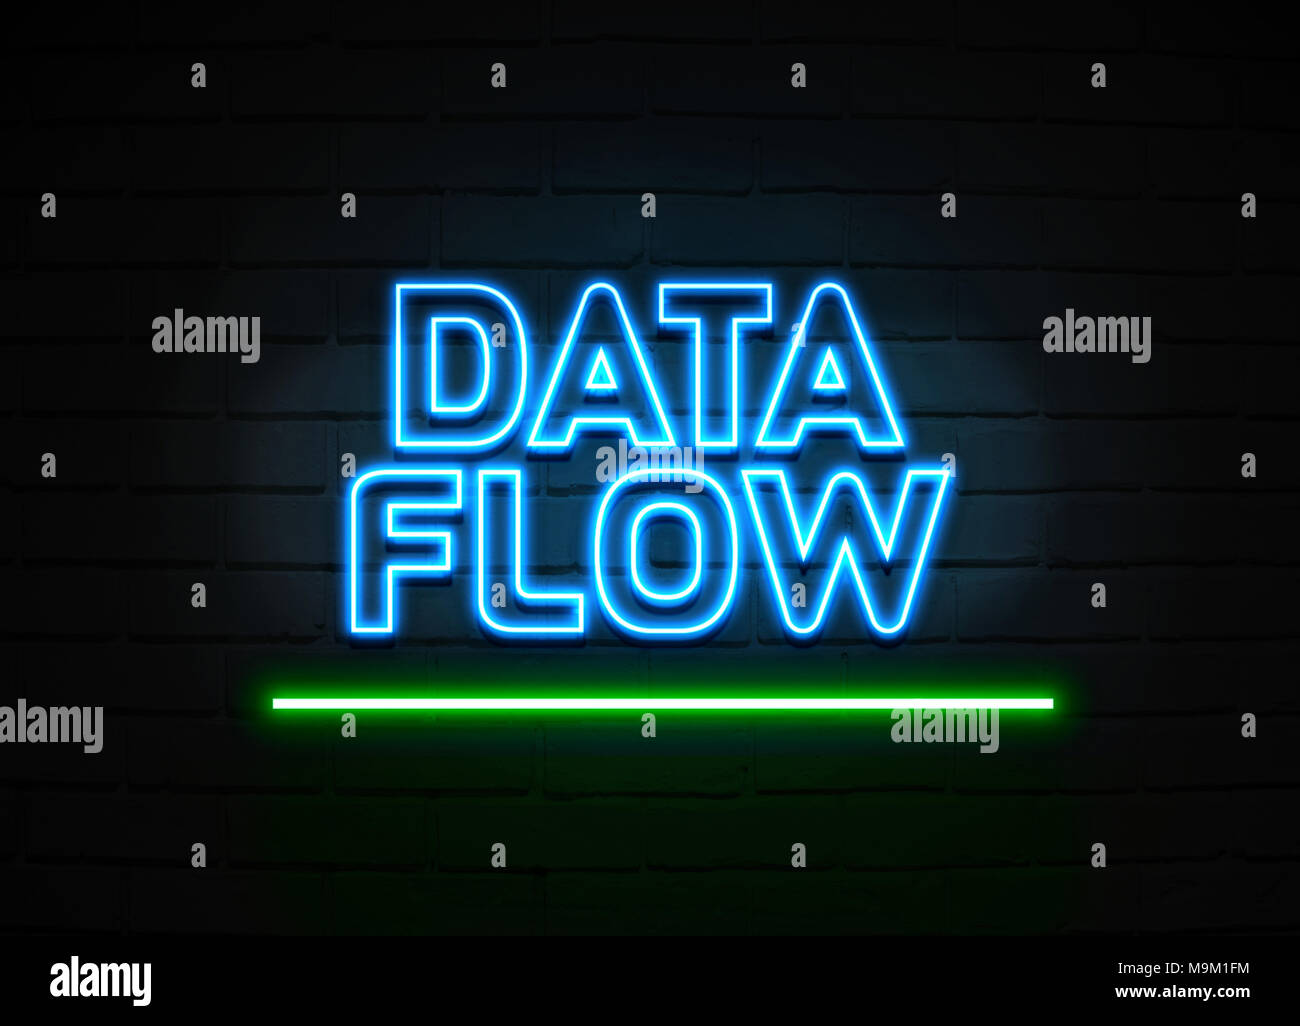 Flux de données en néon - Glowing Neon Sign sur mur brickwall - rendu 3D illustration libres de droits. Banque D'Images